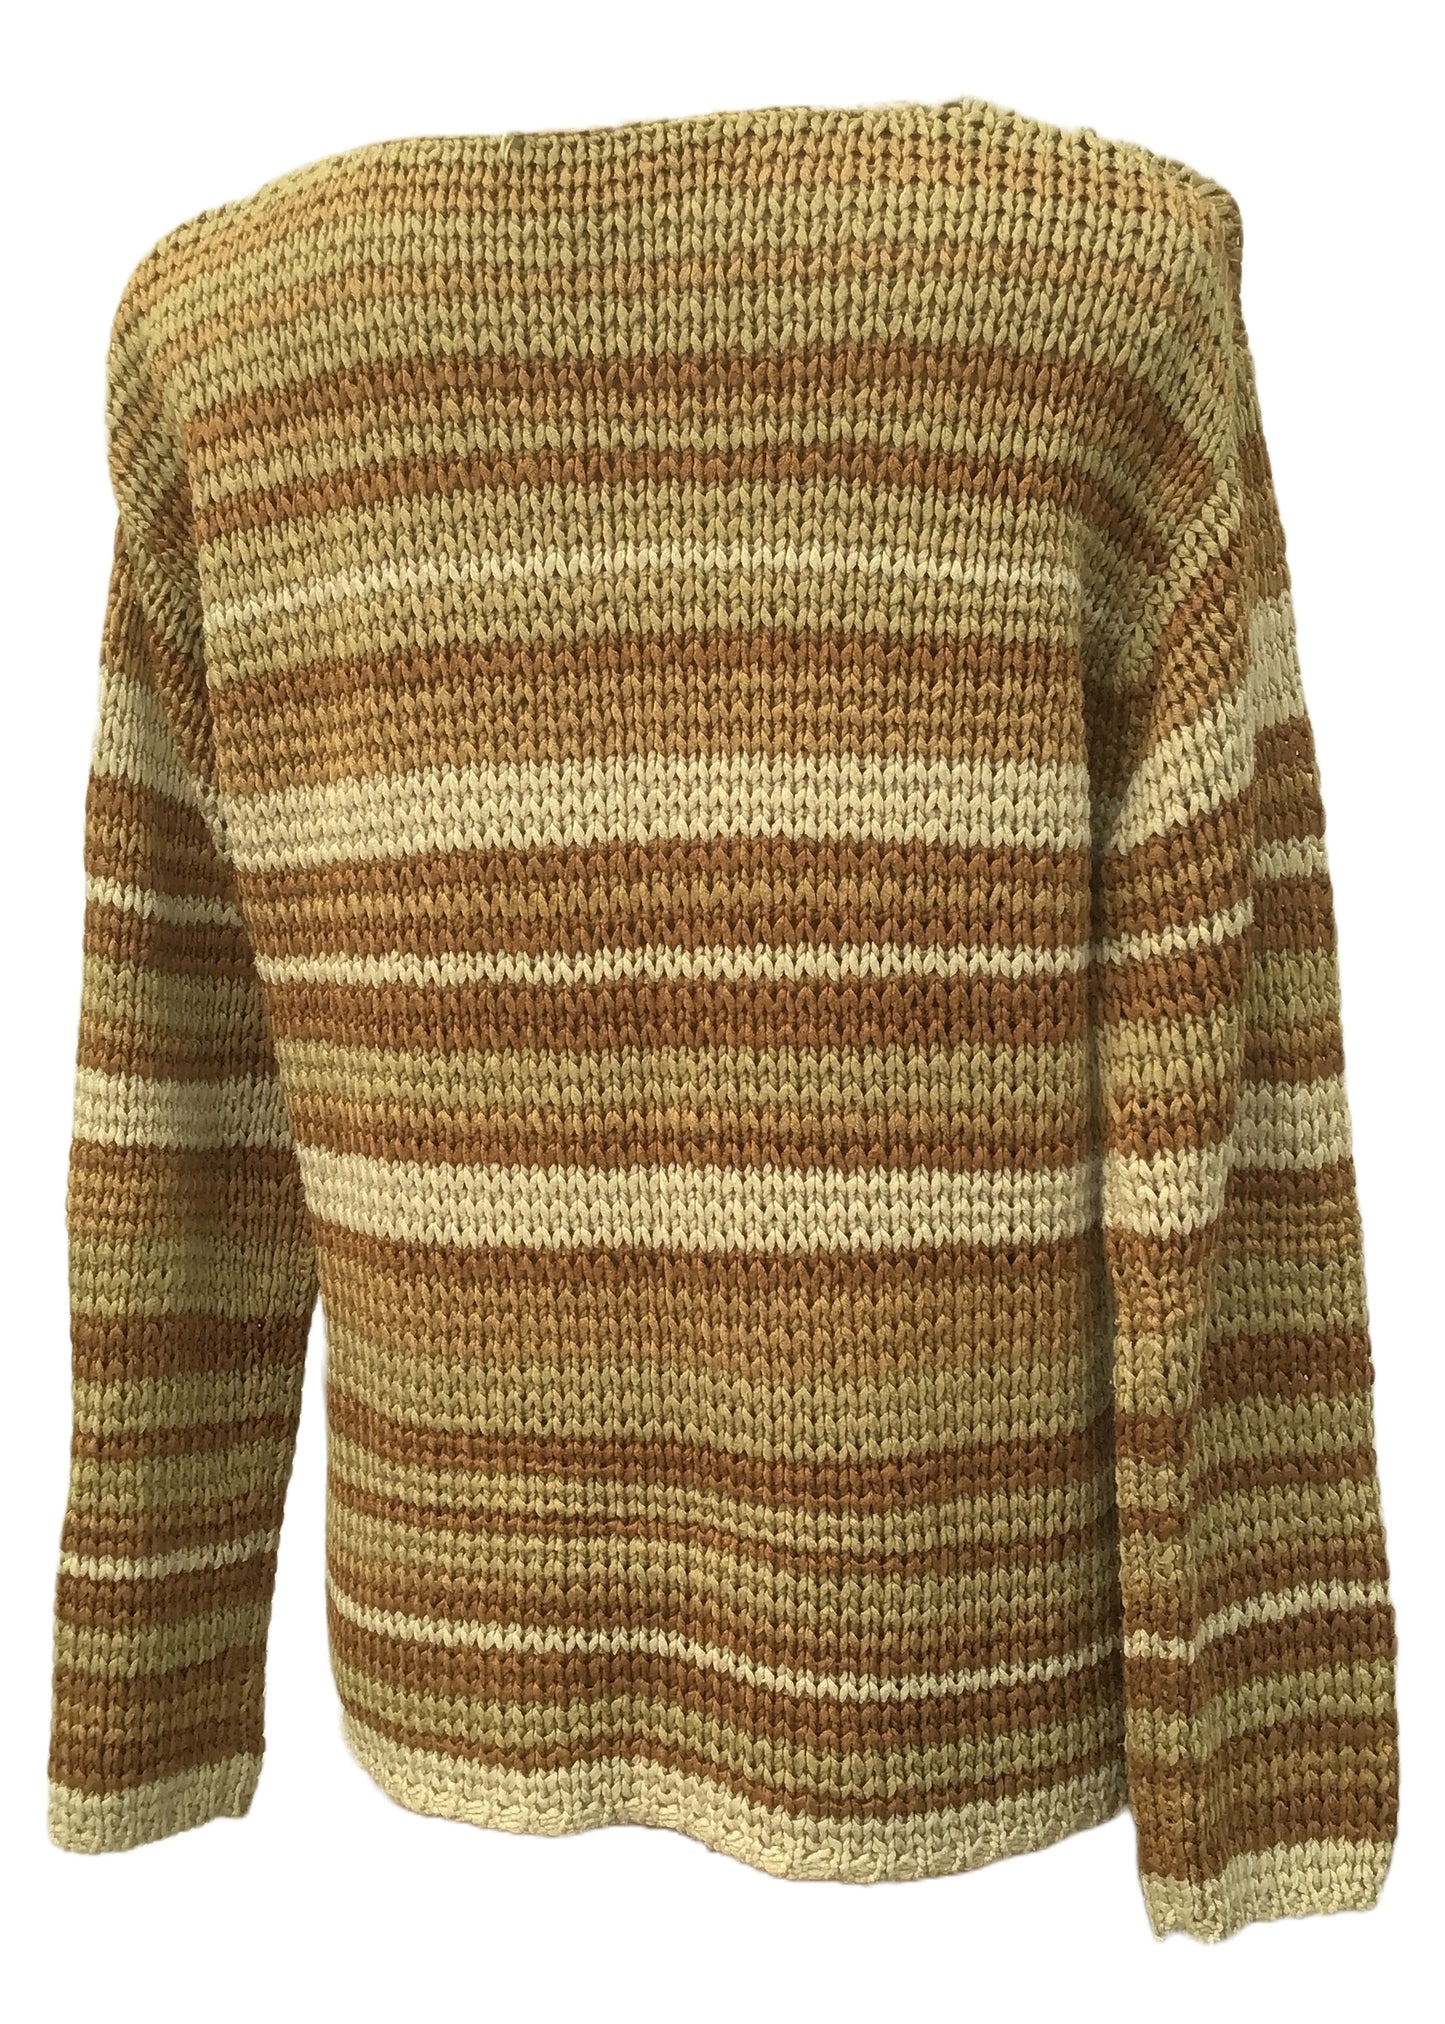 Vintage 80s Beige Striped Ribbon Knit Sweater